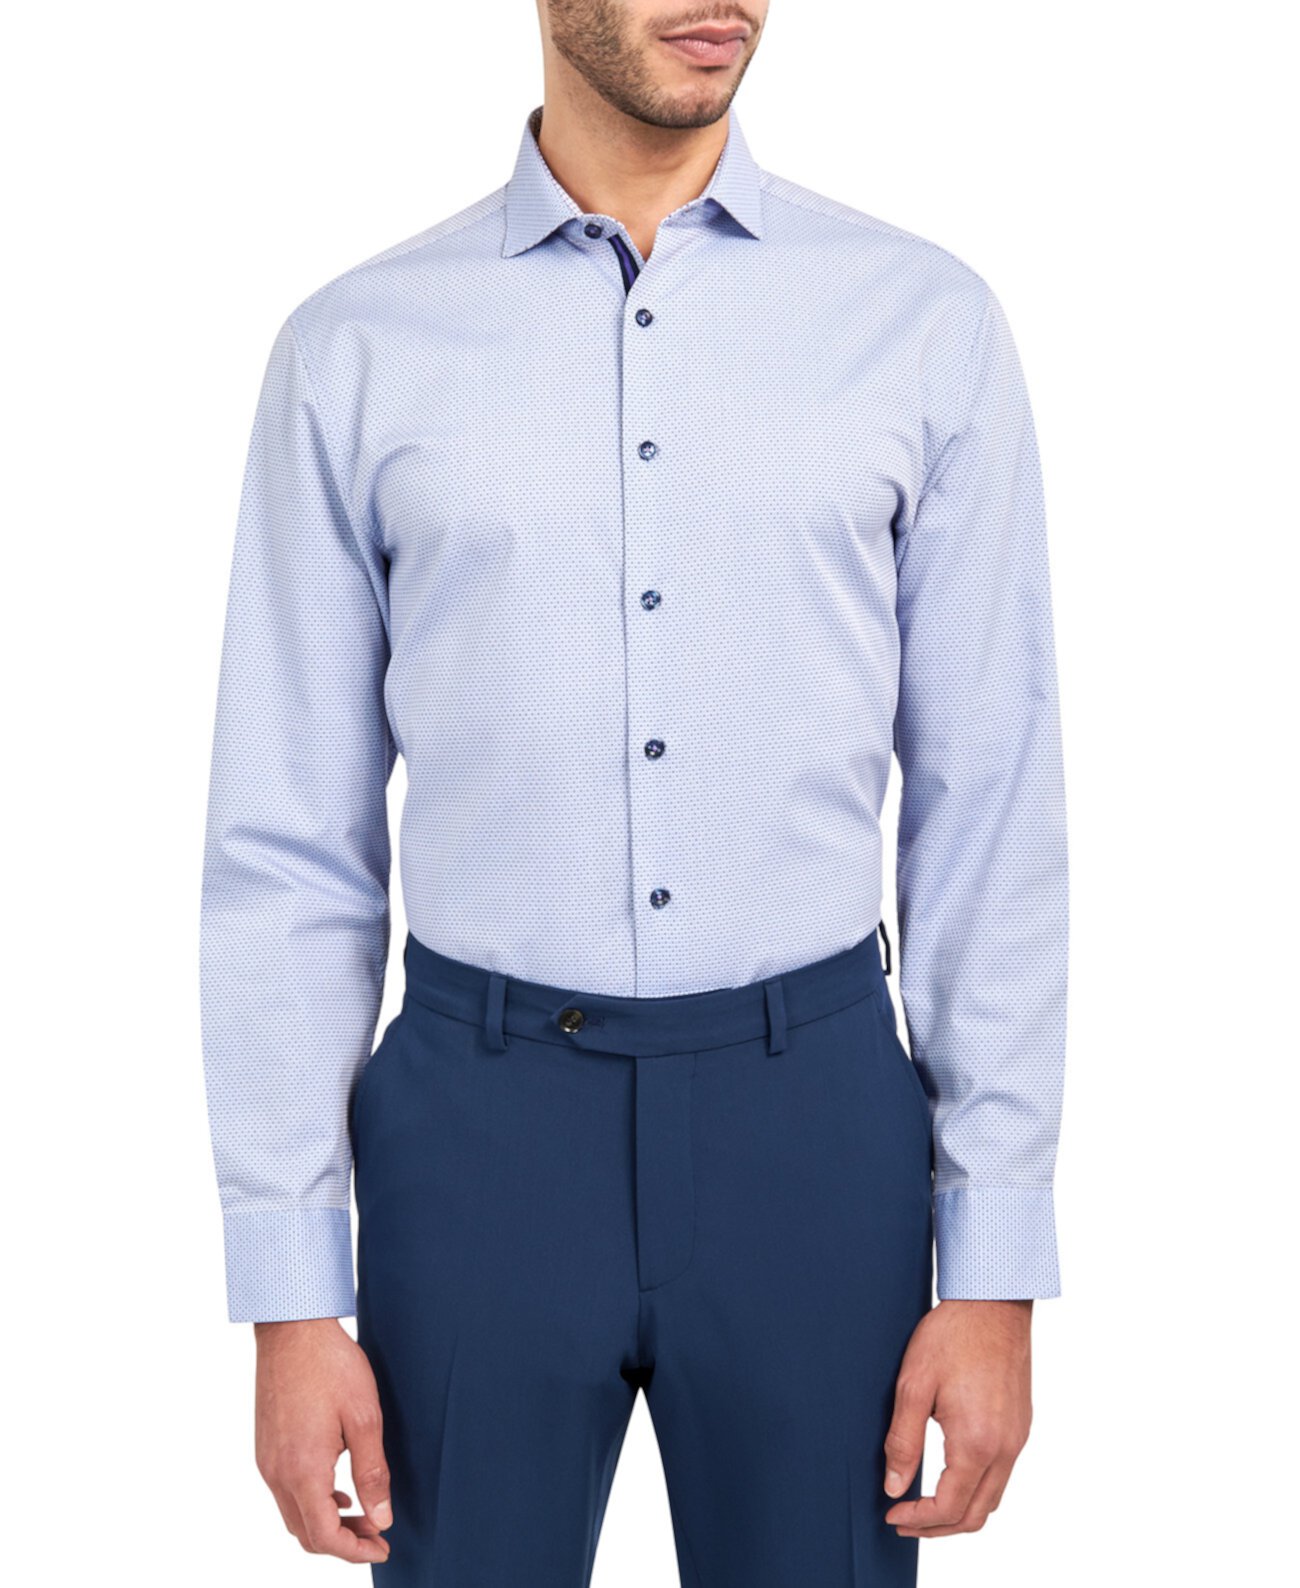 Мужская классическая рубашка обычного кроя с принтом «добби» в горошек MICHELSONS OF LONDON